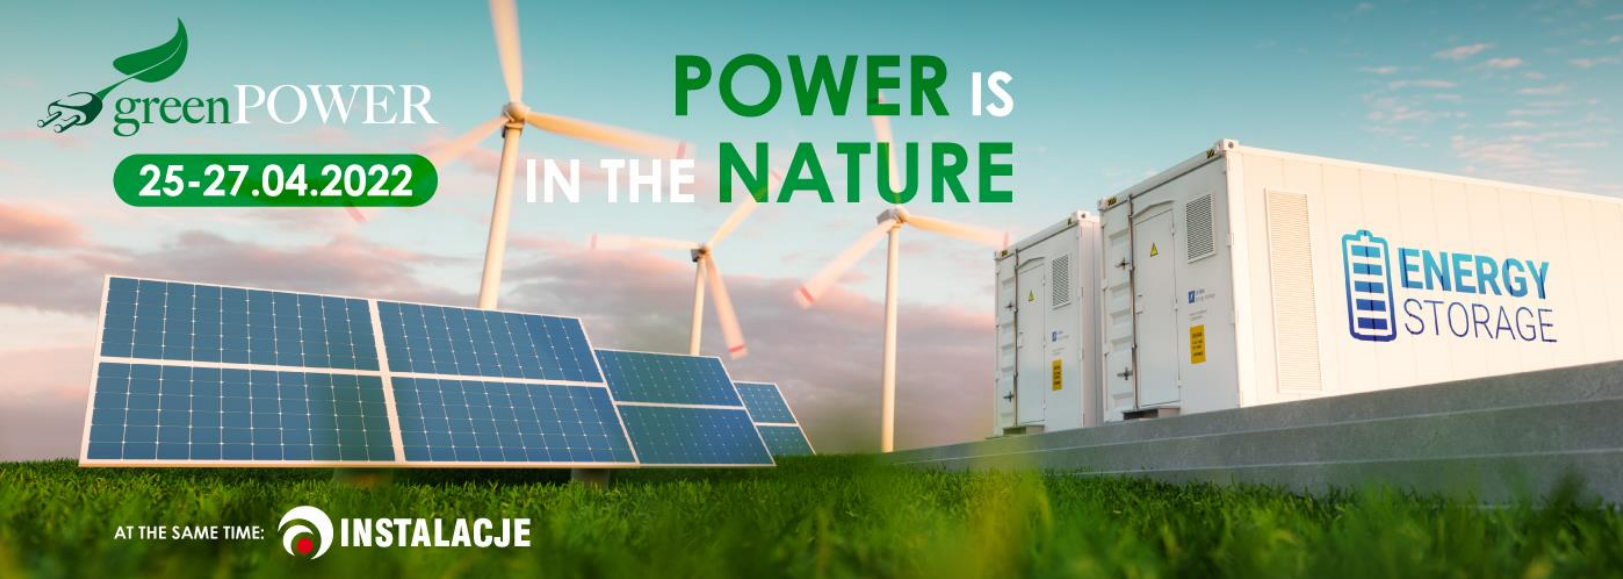 2022年4月波兰国际可再生能源展Green Power